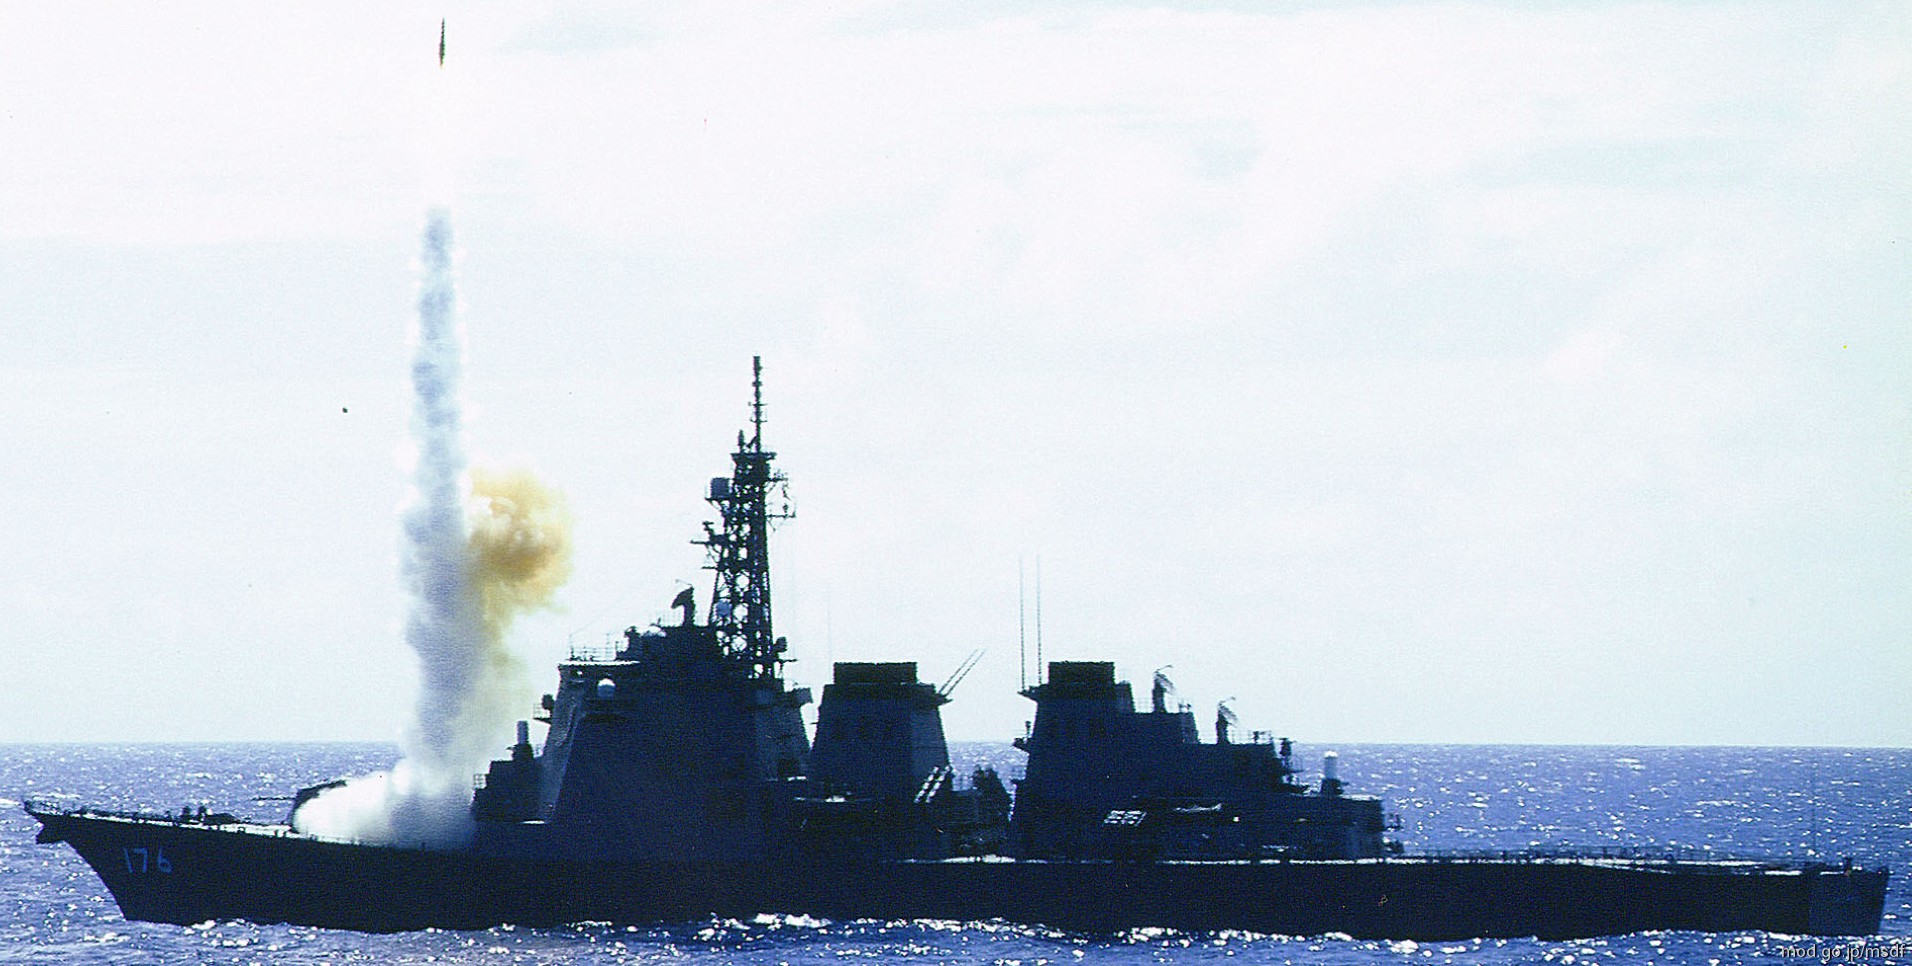 ddg-176 jds chokai kongou class destroyer japan maritime self defense force jmsdf 03